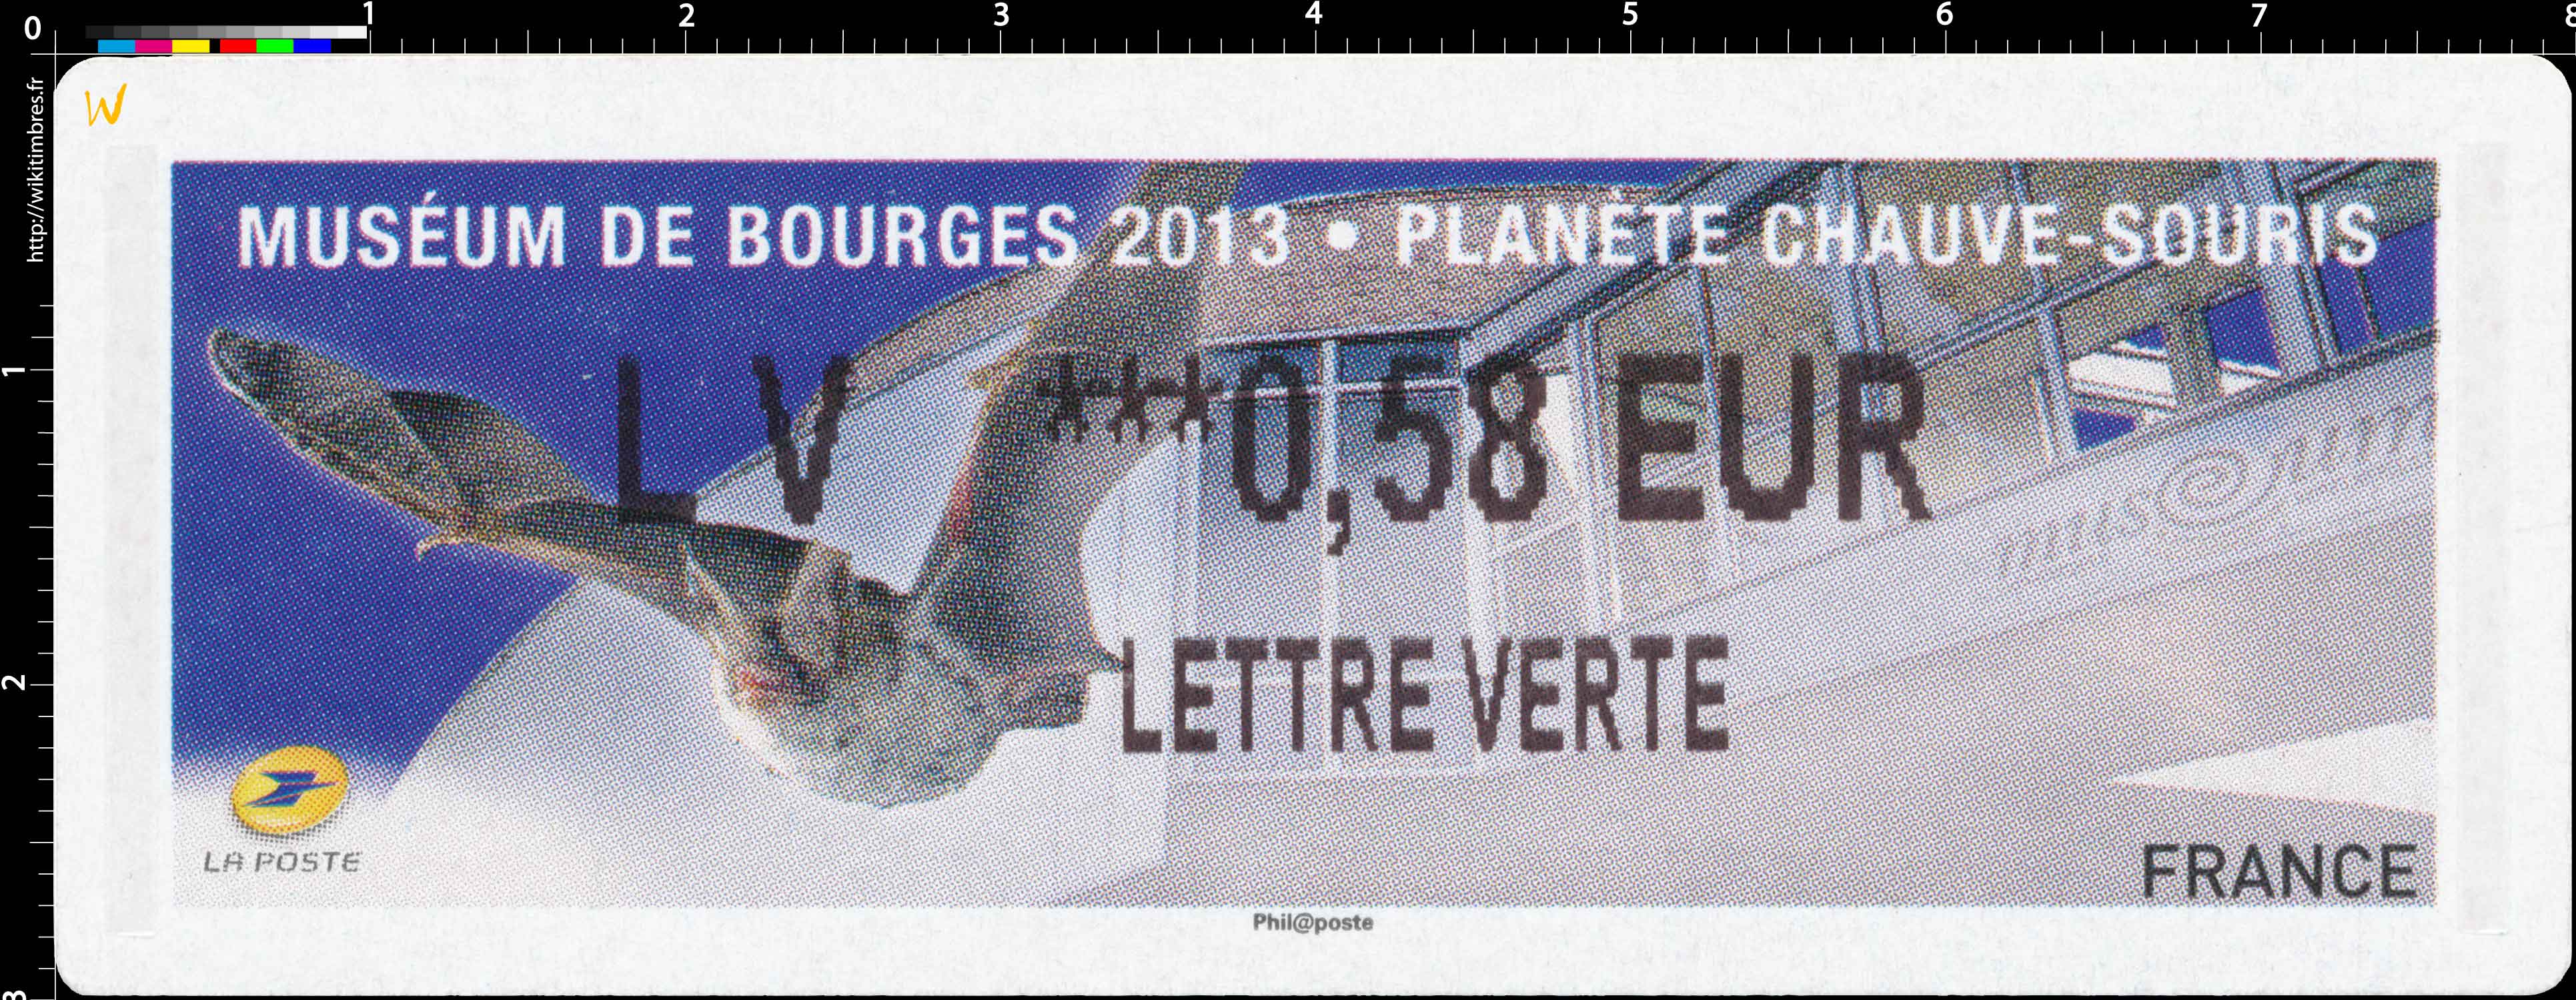 Muséum de Bourges 2013 – Planète Chauve-souris